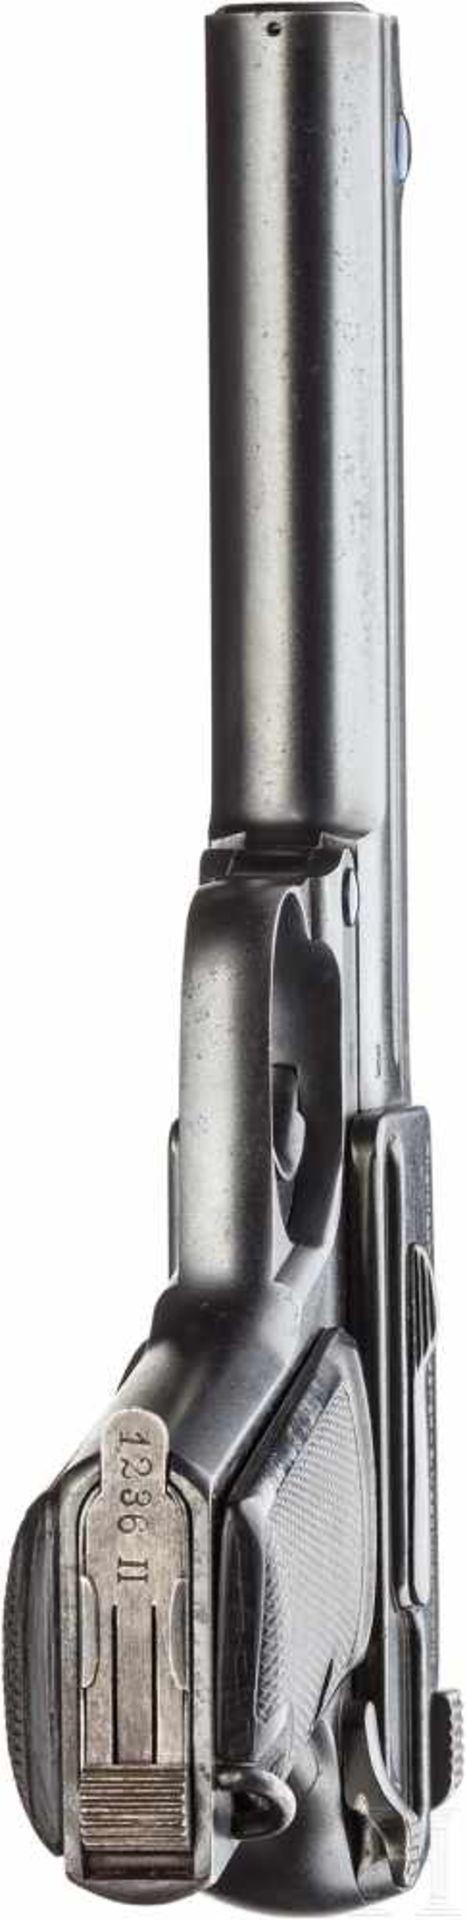 Dreyse Mod. 1910Kal. 9 mm Luger, Nr. 1236, Nummerngleich. Lauf leicht matt, Länge 130 mm. - Bild 4 aus 4